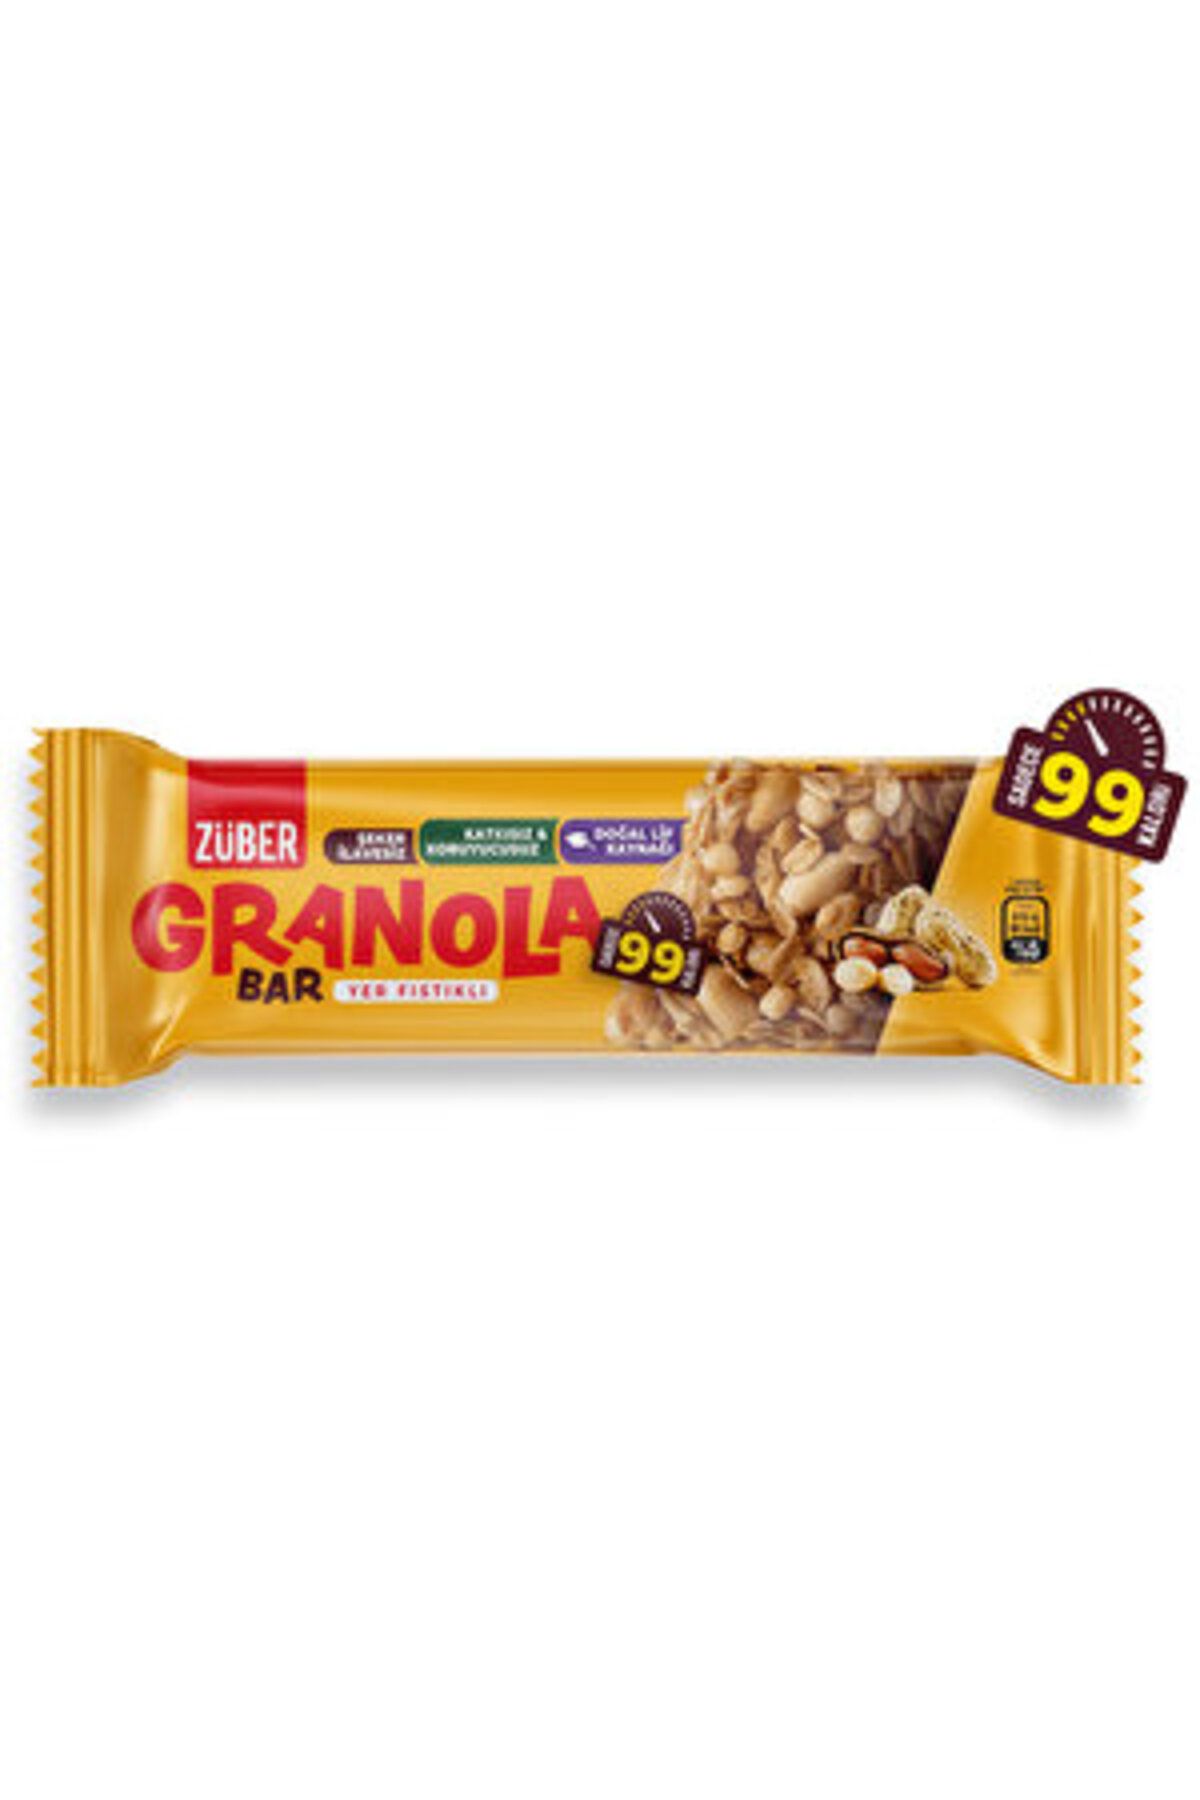 Züber Yer Fıstıklı Granola Bar 25 gr ( 5 ADET )